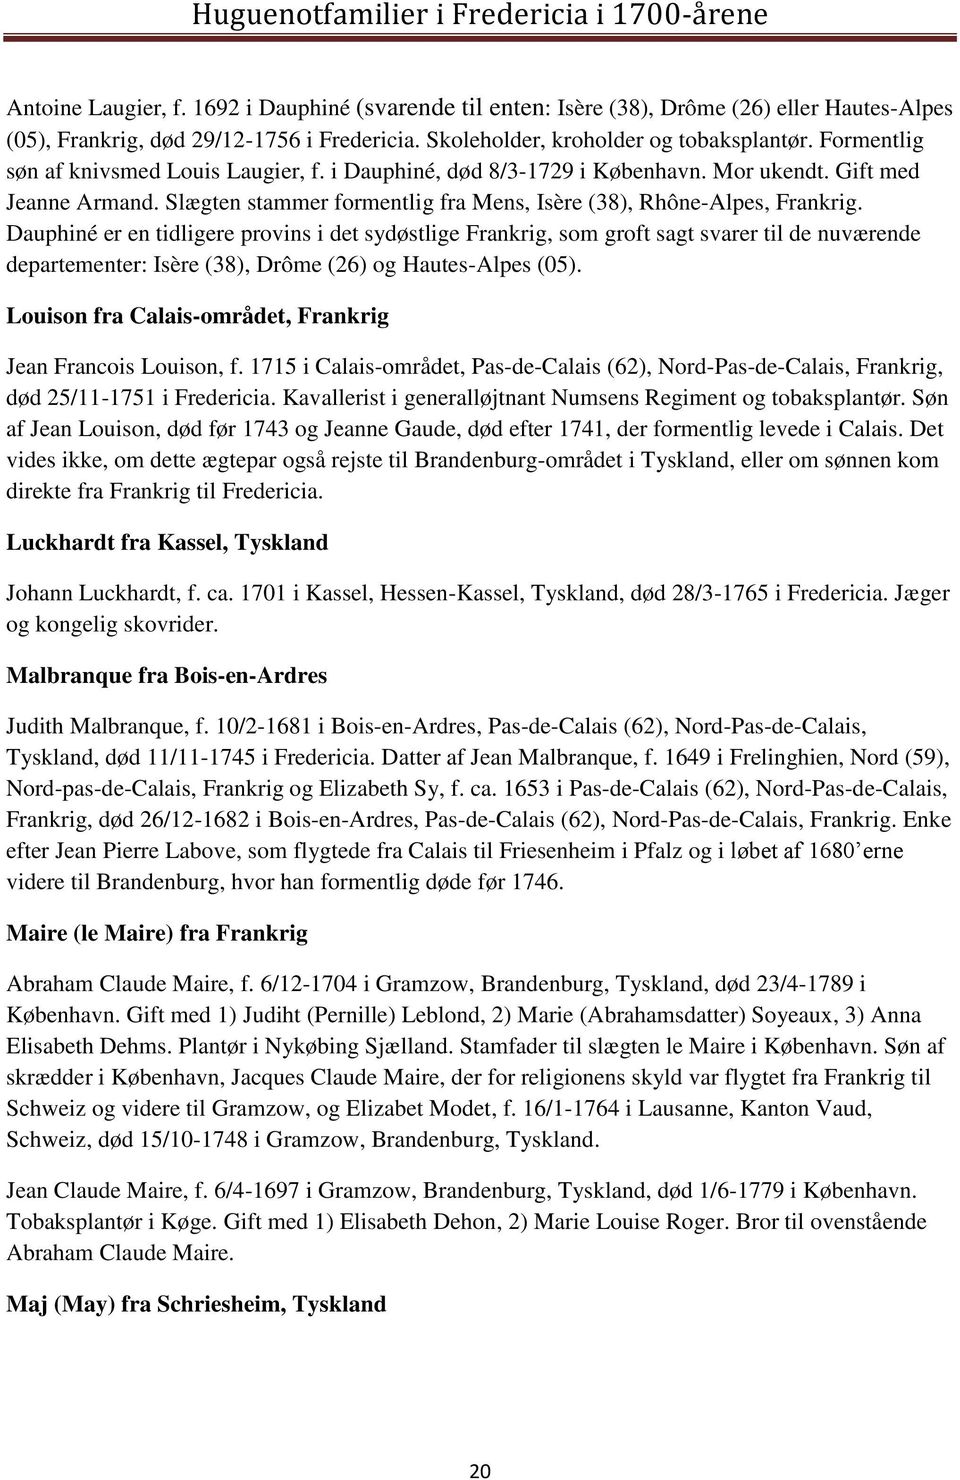 Huguenotfamilier i Fredericia i 1700-årene - PDF Gratis download